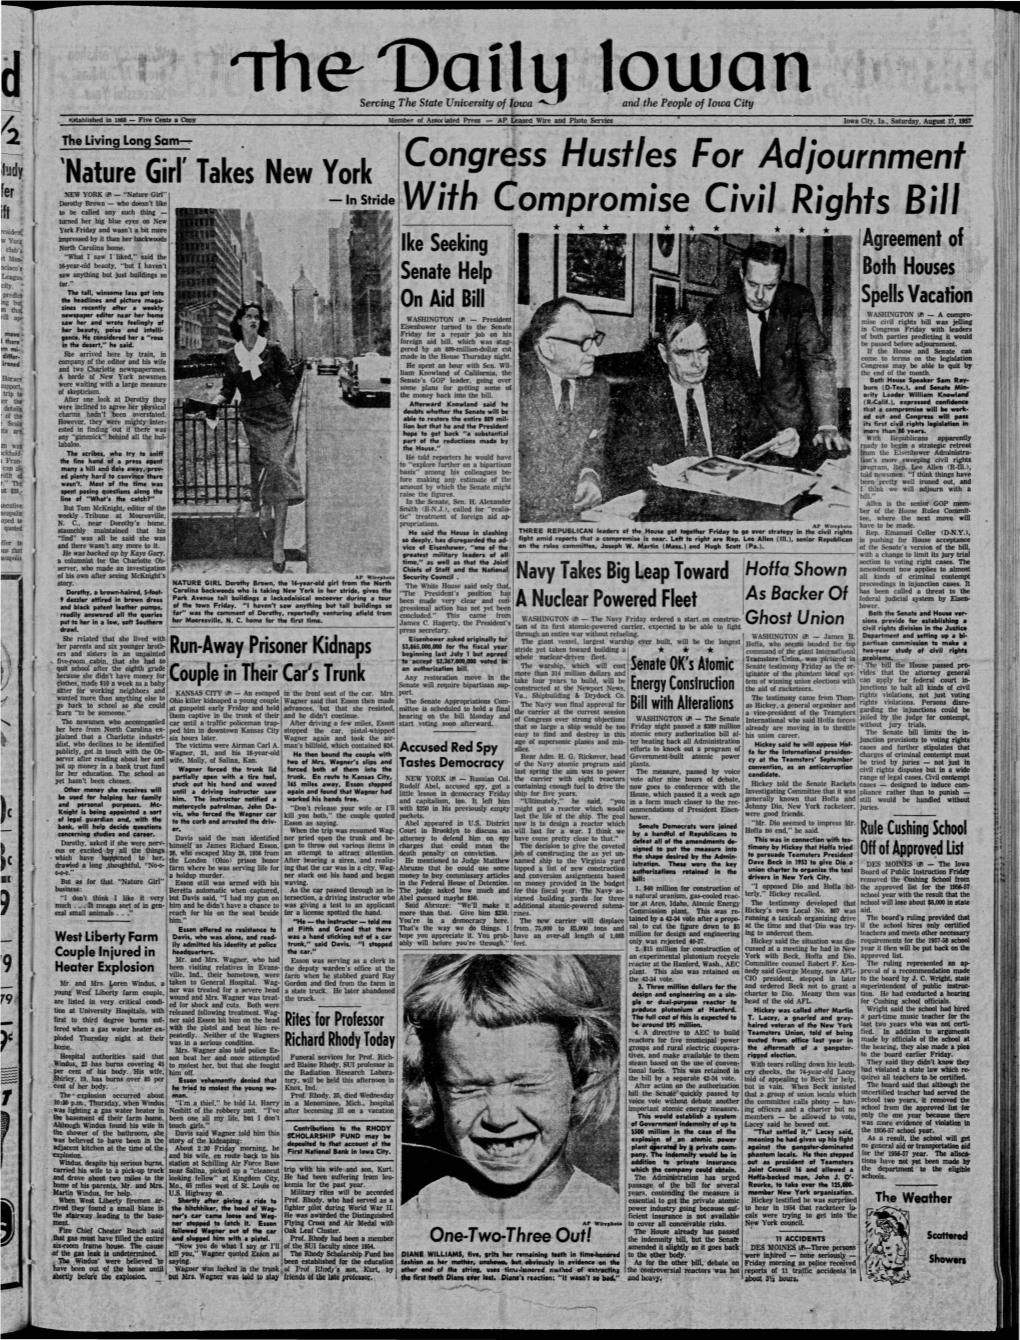 Daily Iowan (Iowa City, Iowa), 1957-08-17